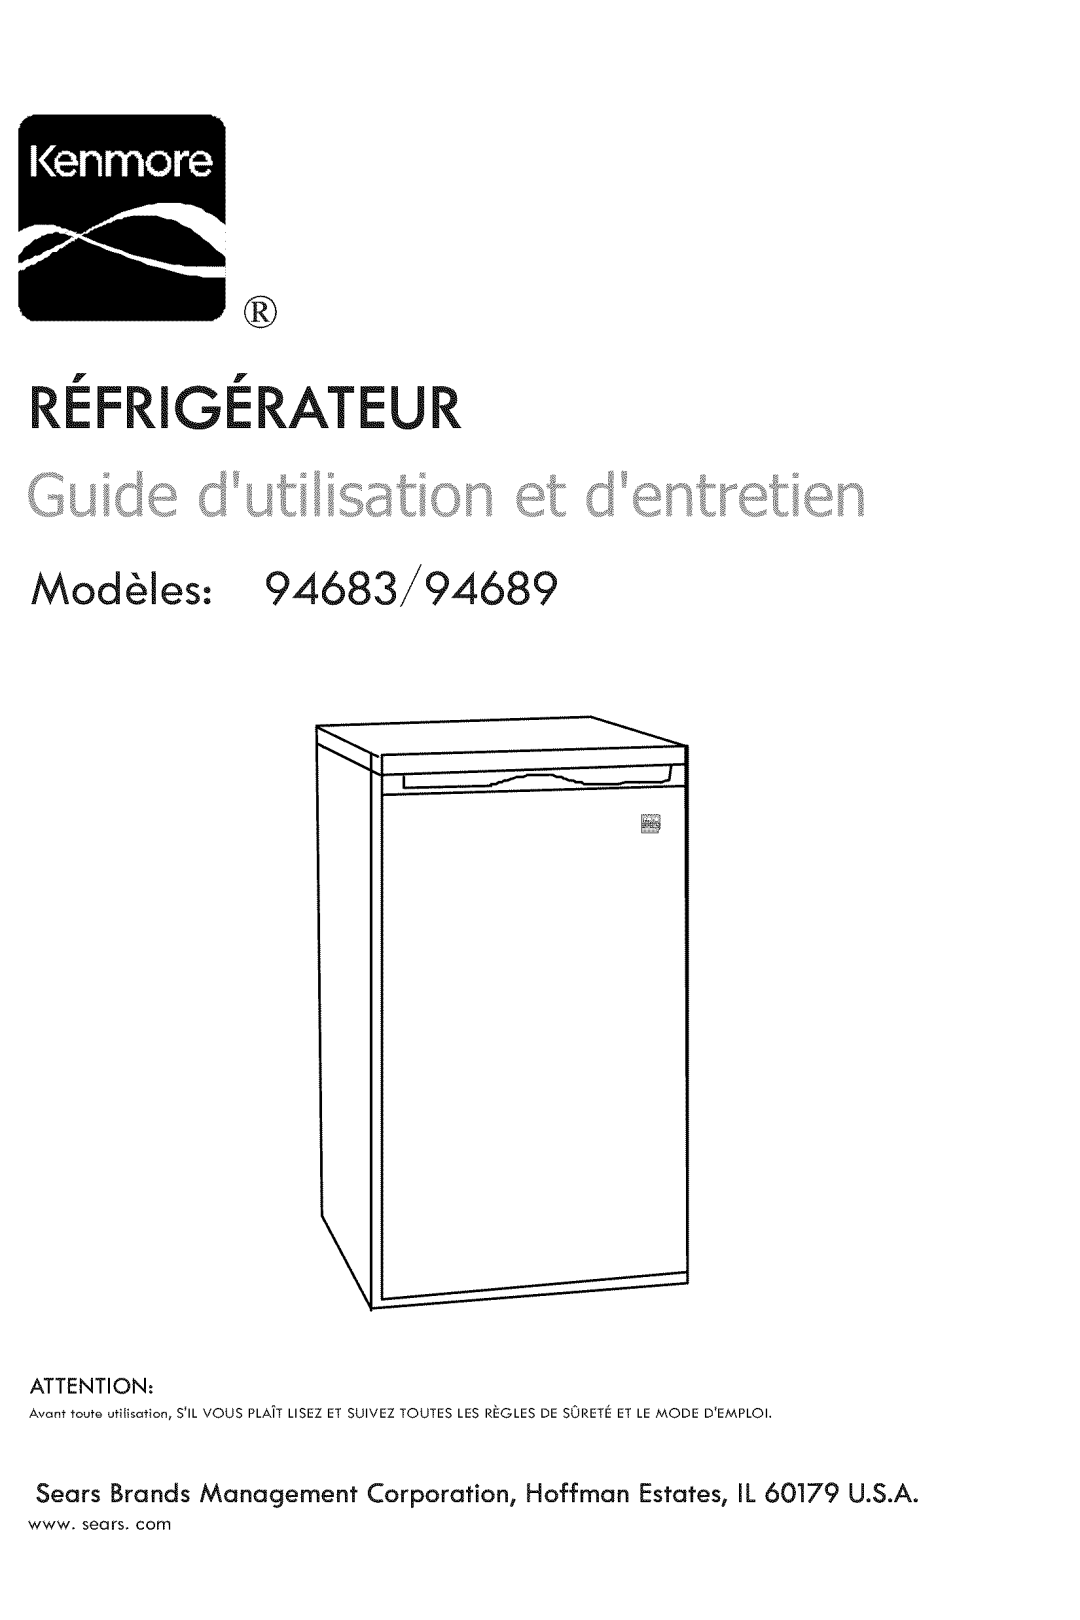 Kenmore manual Refrigerateur, ModUles: 94683/94689 